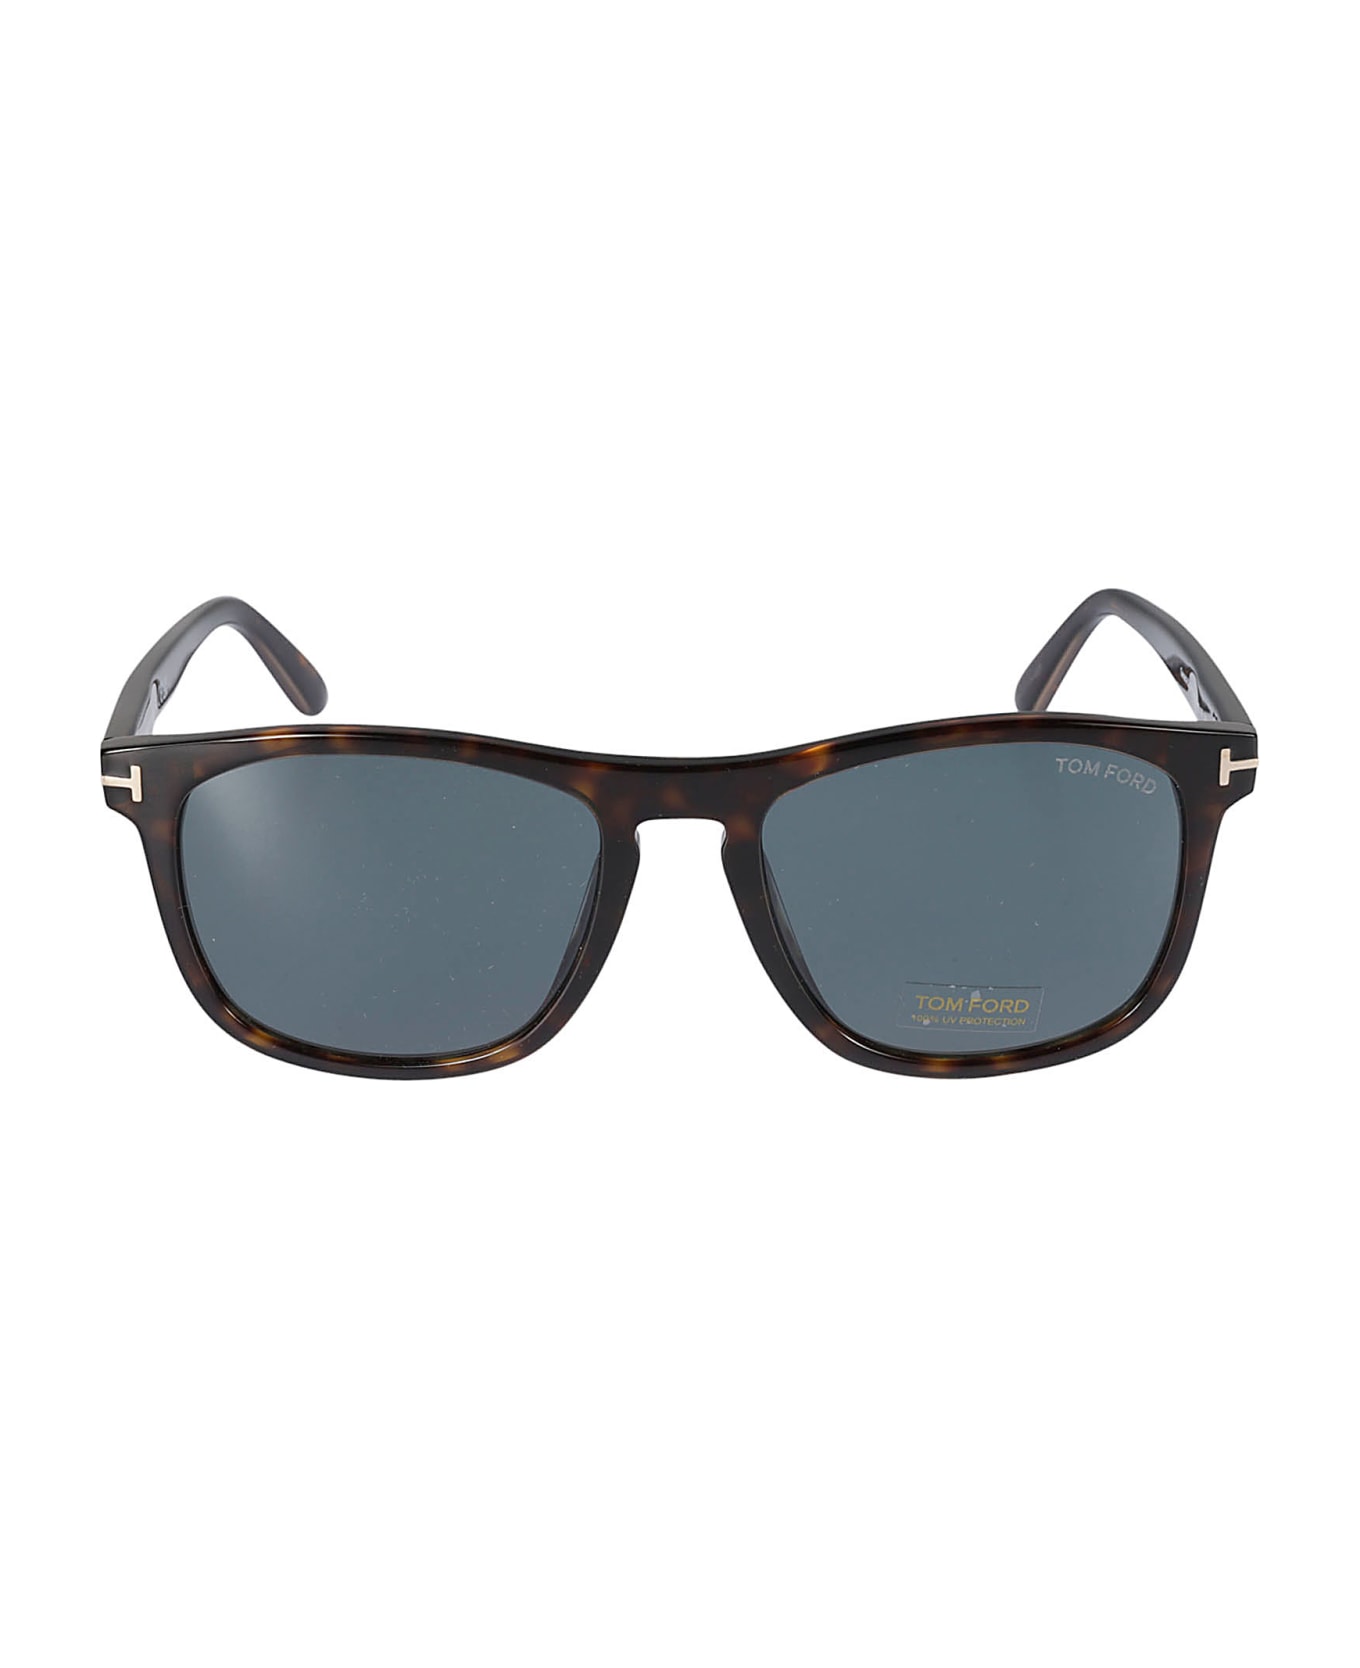 Tom Ford Eyewear Gerard 02 Sunglasses - N/A